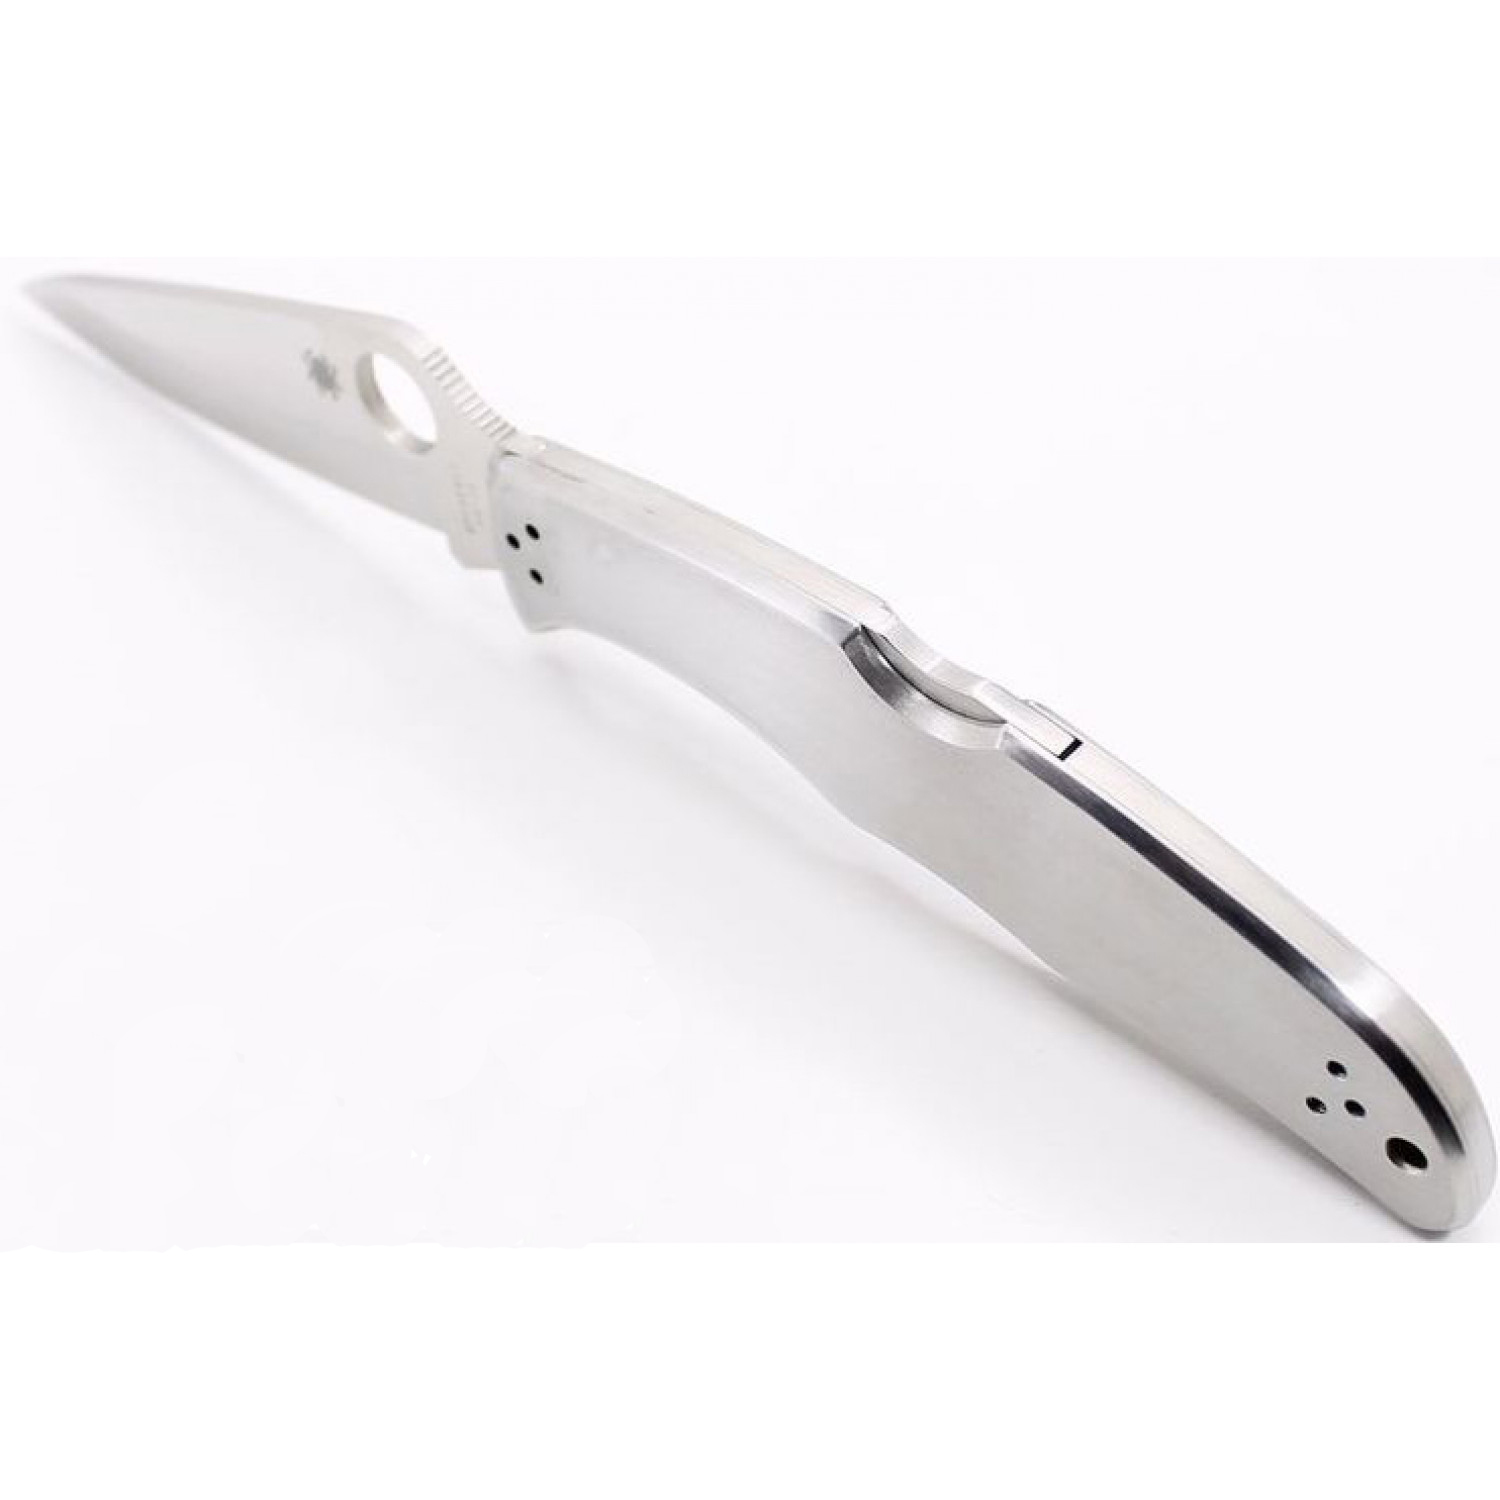 Складной нож Endura 4 - Spyderco 10P, сталь VG-10 Satin Plain, рукоять нержавеющая сталь - фото 7